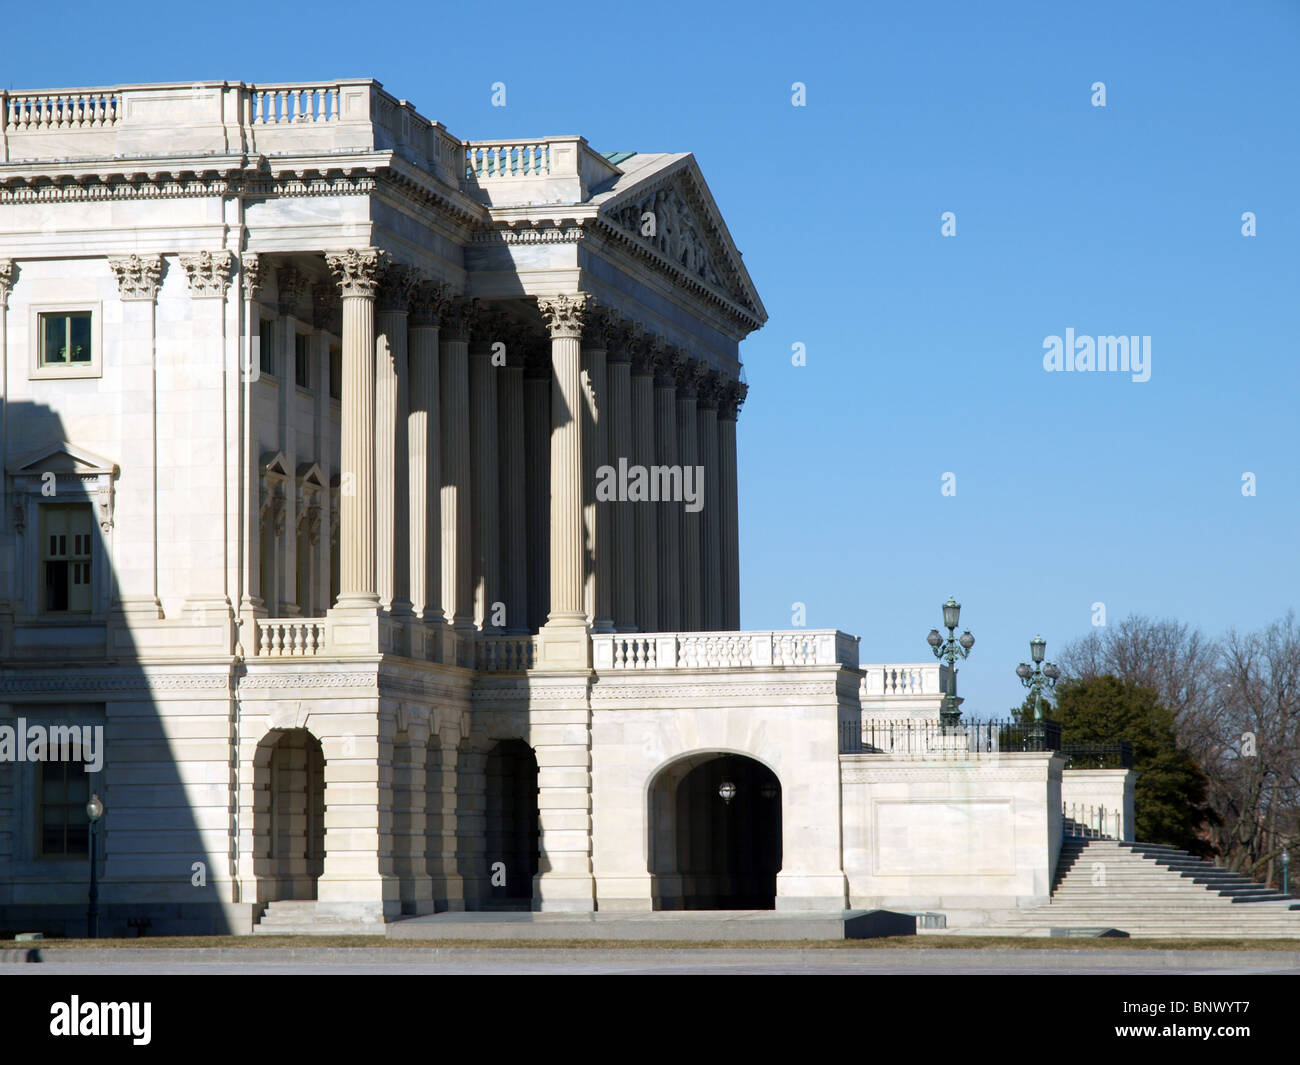 Profil de l'édifice de la Cour suprême des Etats-Unis à Washington DC. Banque D'Images